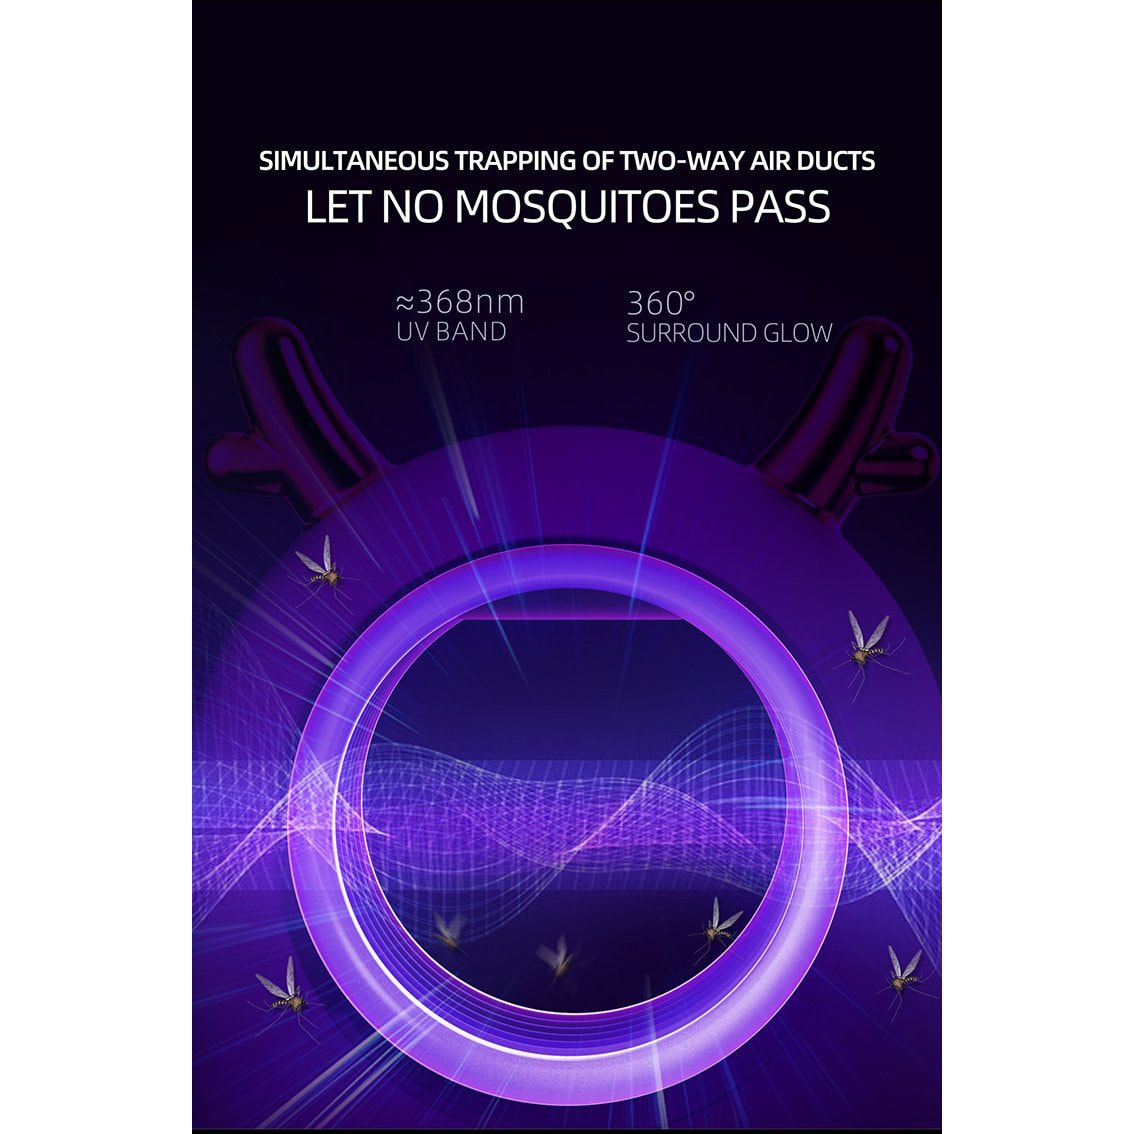 [對抗蚊子]MOSKY L260 USB滅蚊燈家用室內滅蟲驅蚊器防蚊子捕蚊神器嬰兒滅蟲燈(白色)